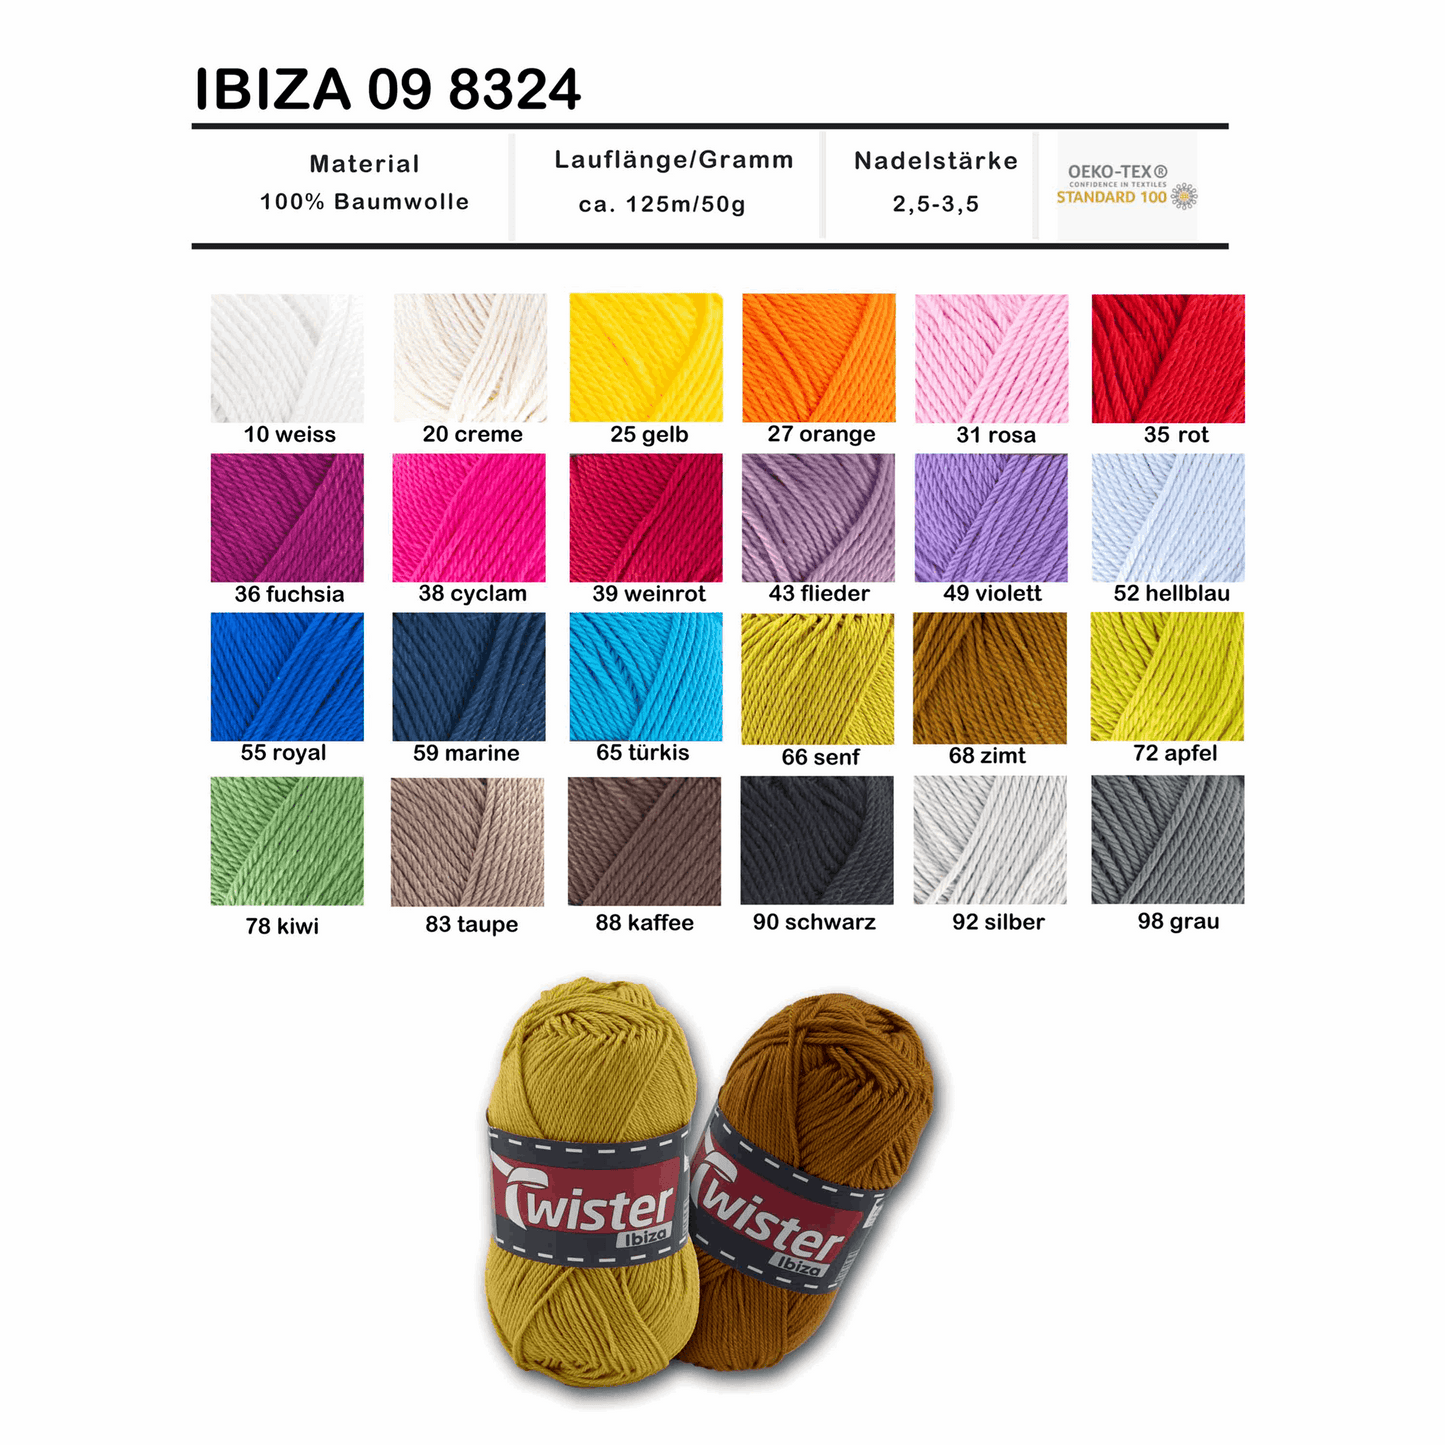 Twister Ibiza, 50g, 98324, Farbe hellblau 52